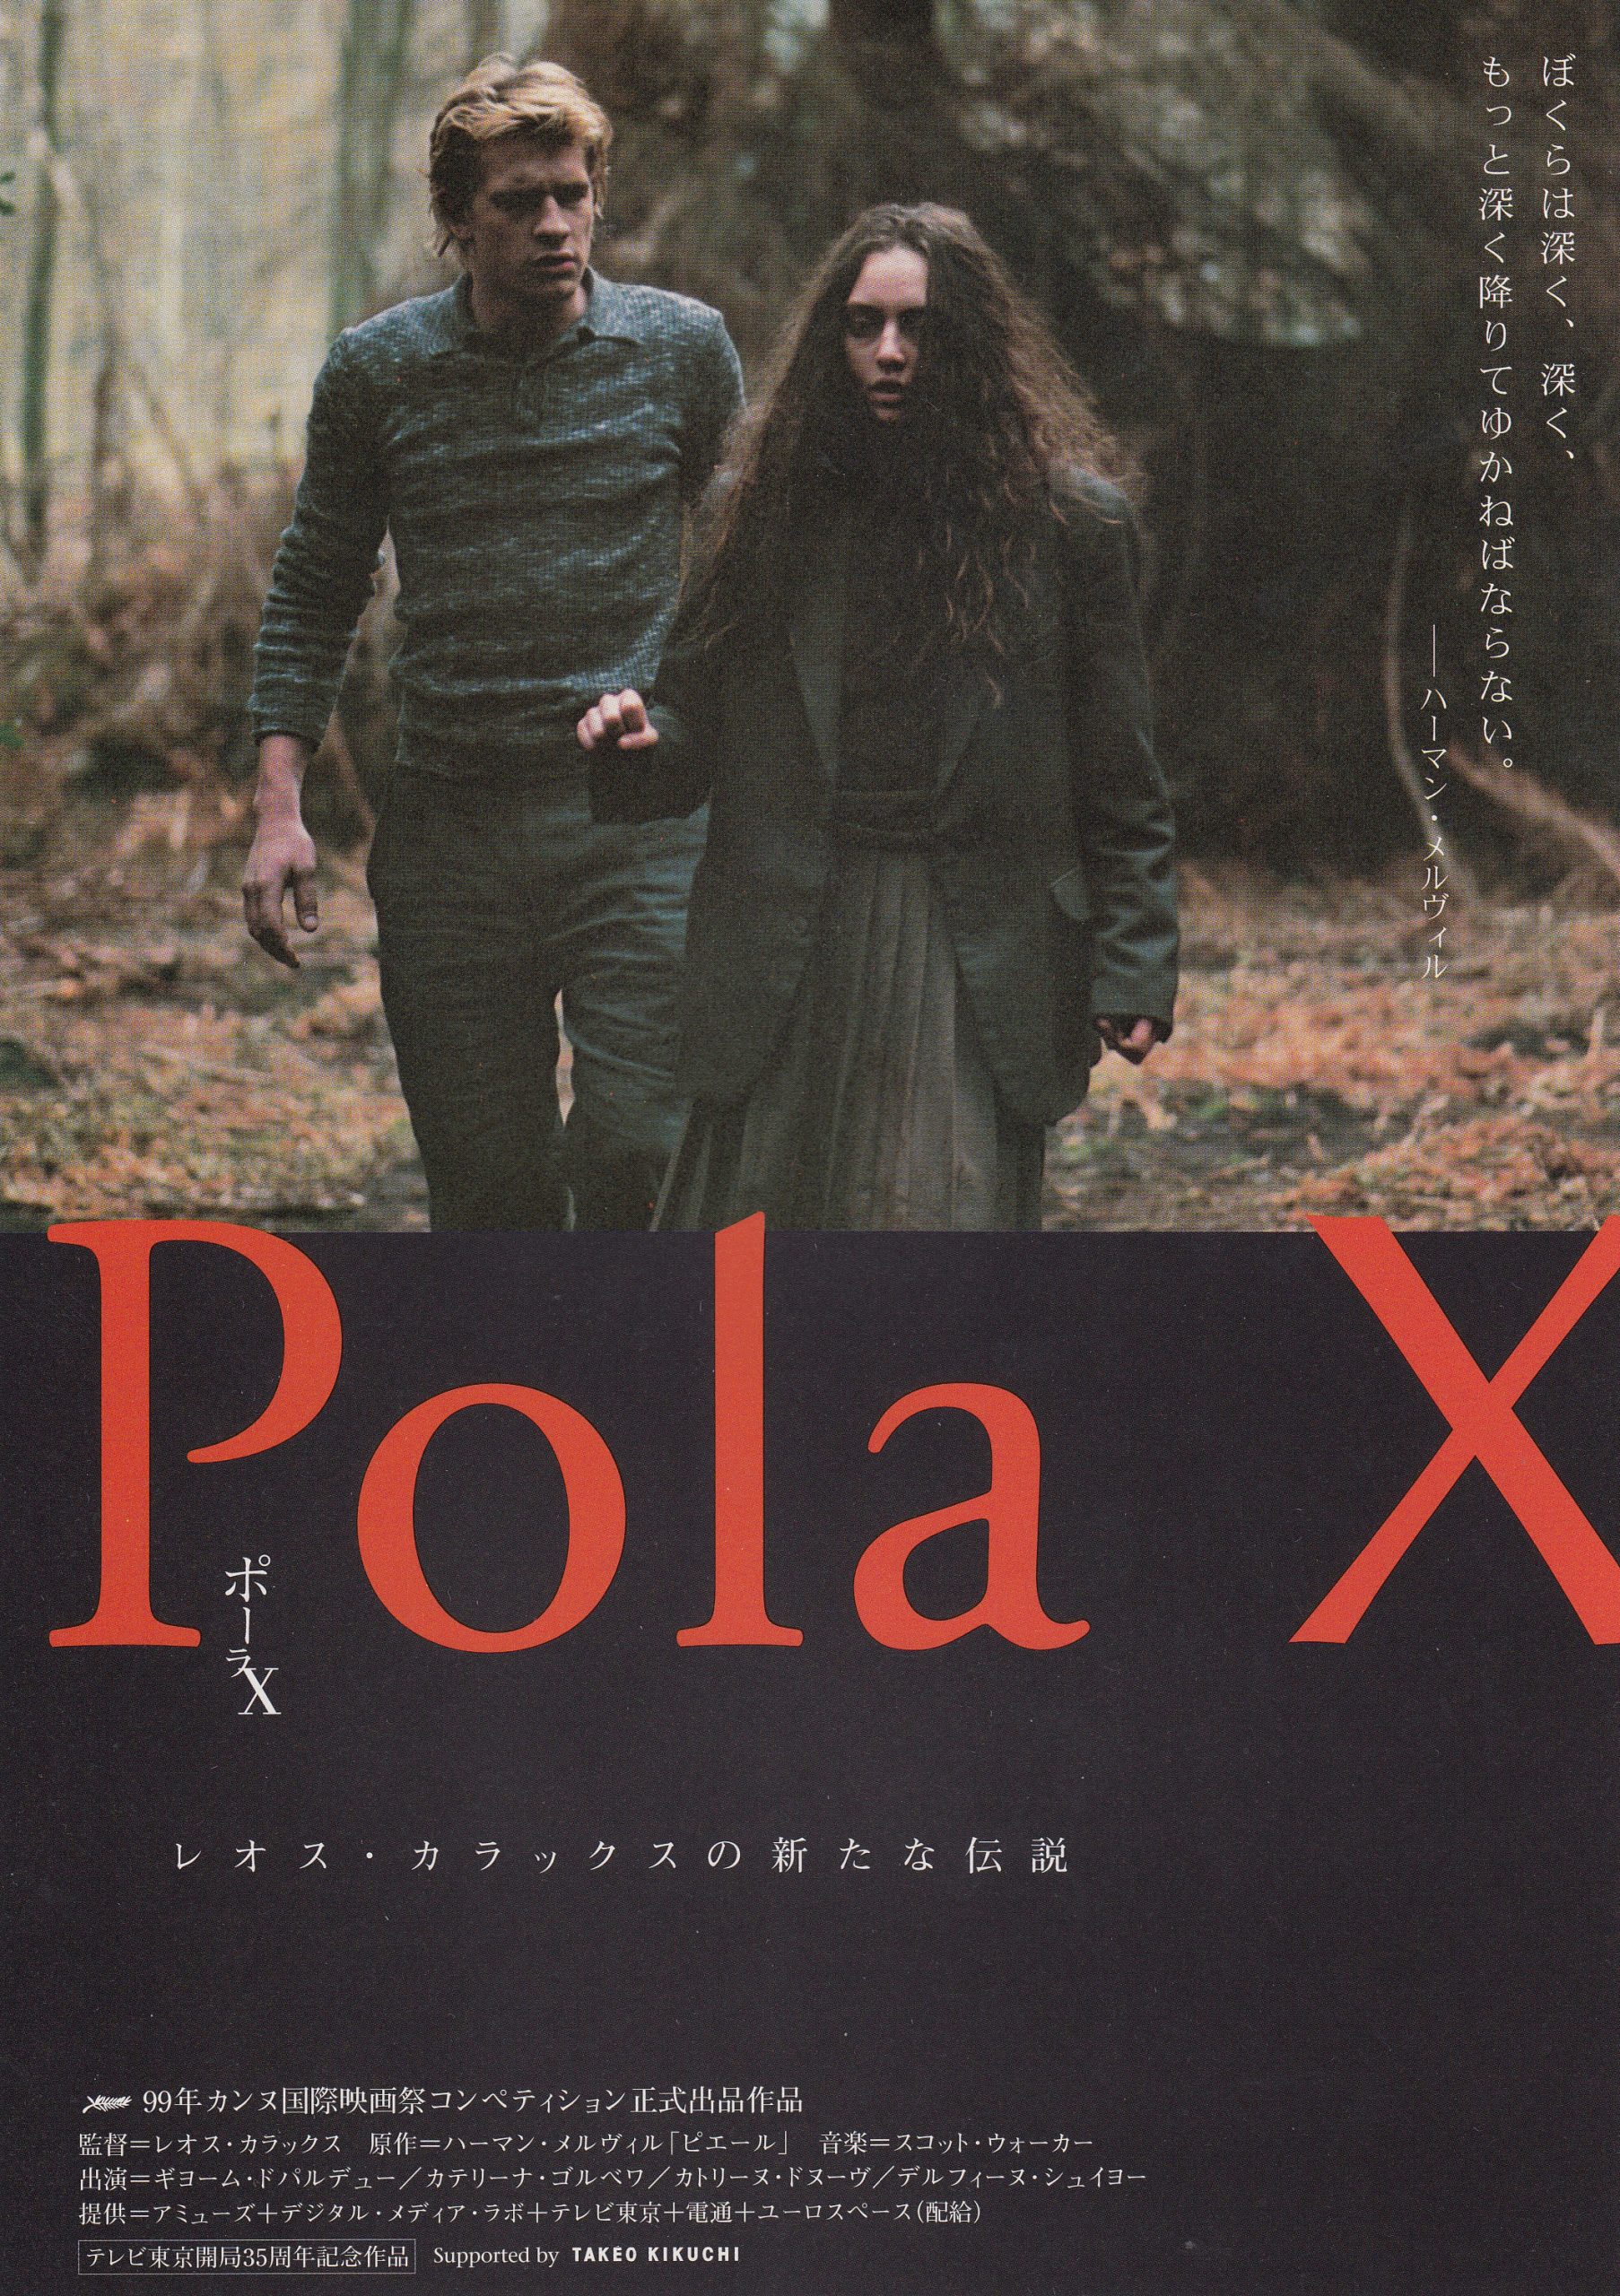 ポーラX('99仏/独/スイス/日本) - daterightstuff.com